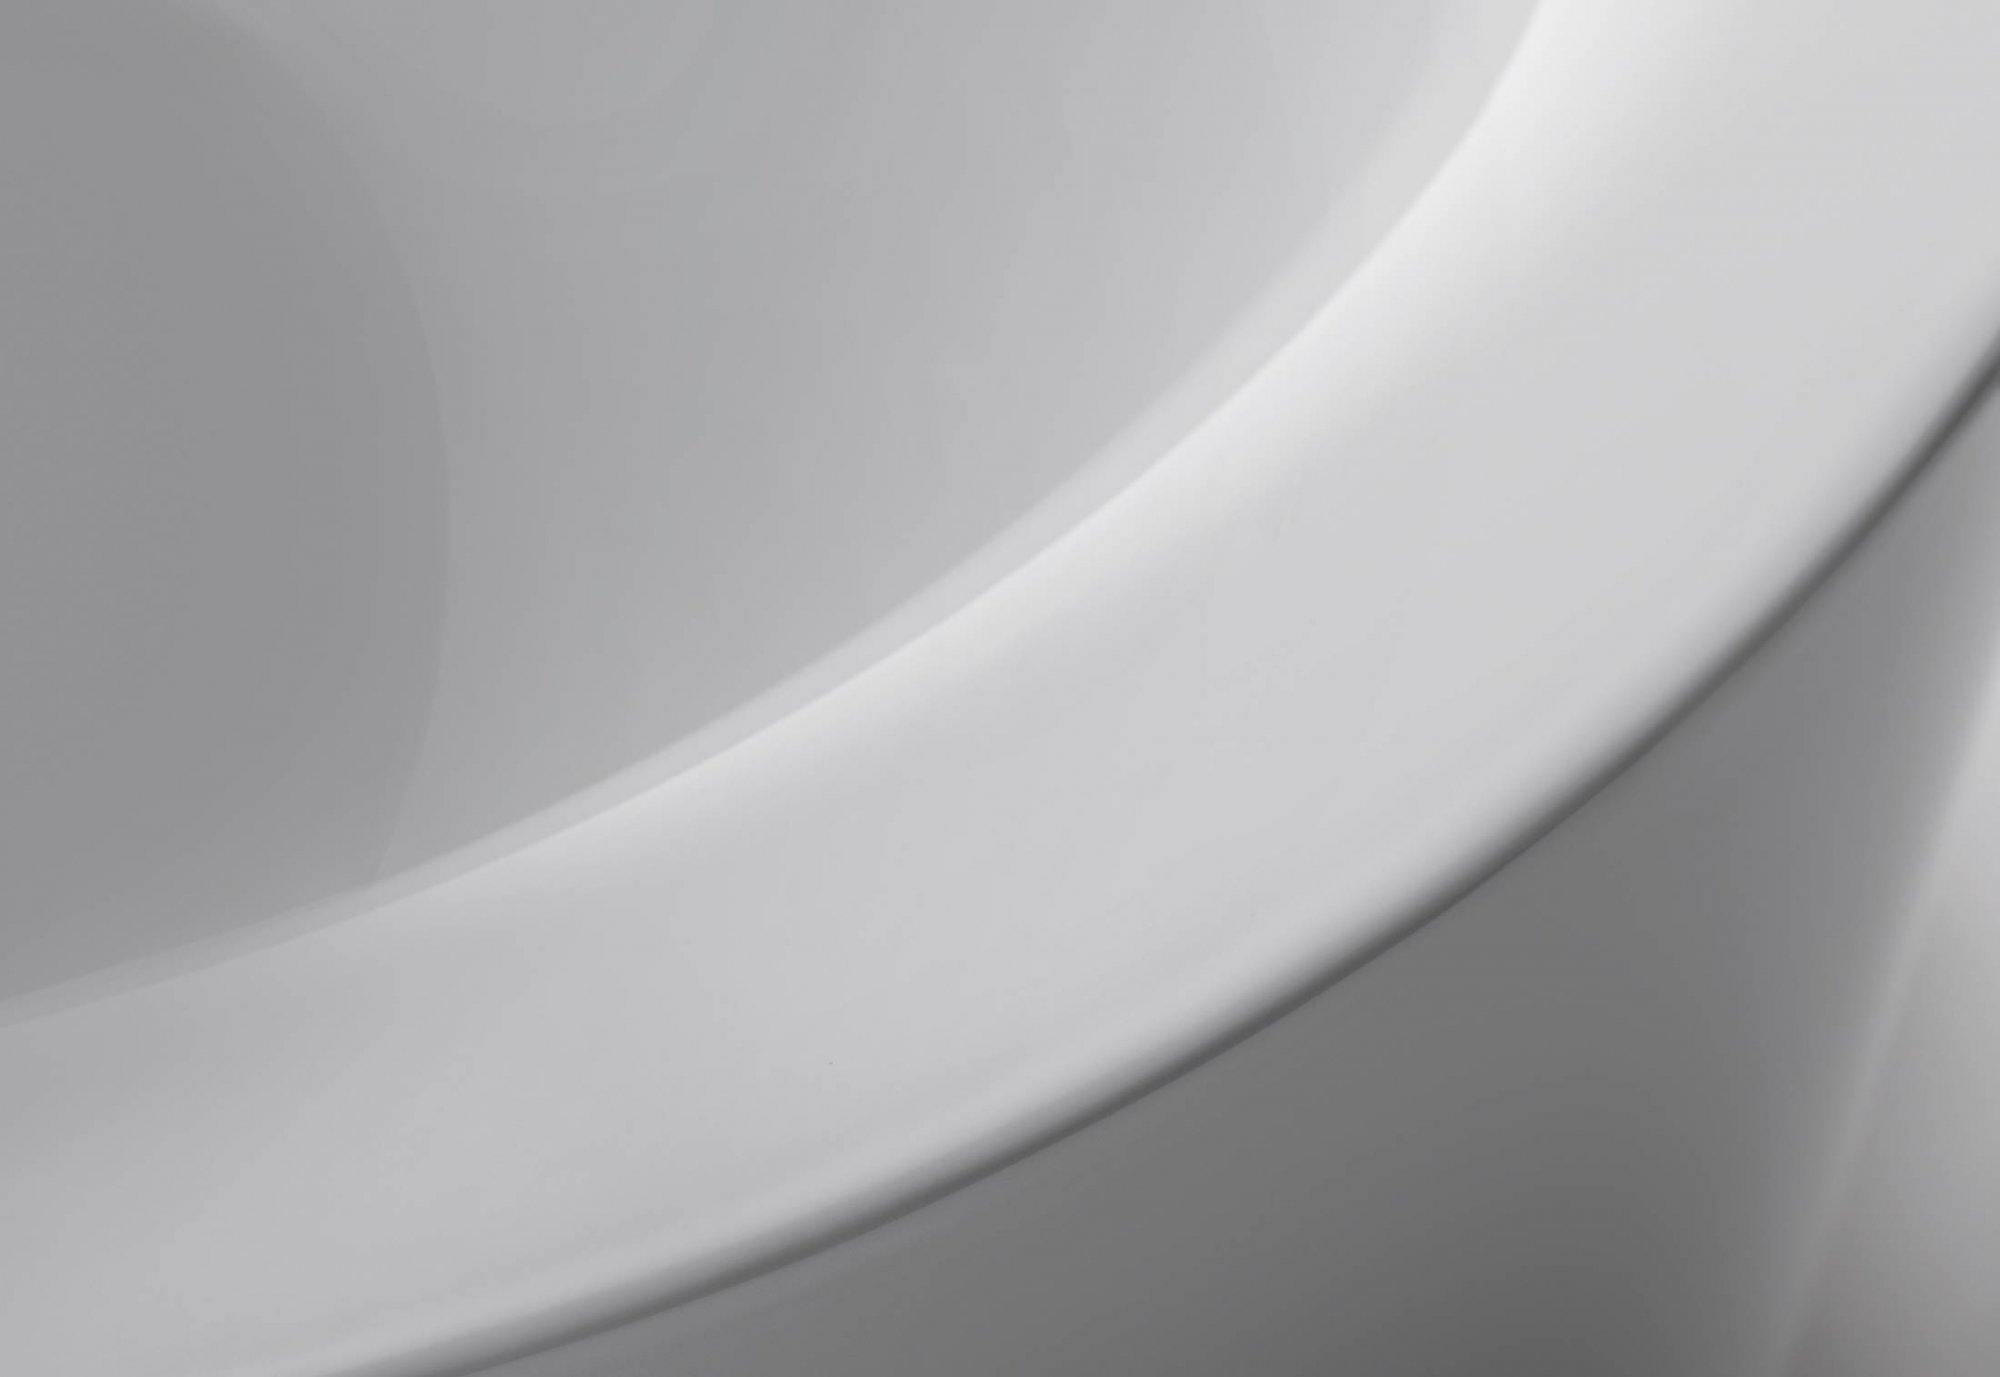 Bette Ванна Starlet Oval Silhouette отдельностоящая с шумоизоляцией и экраном 175х80см, цвет: белый